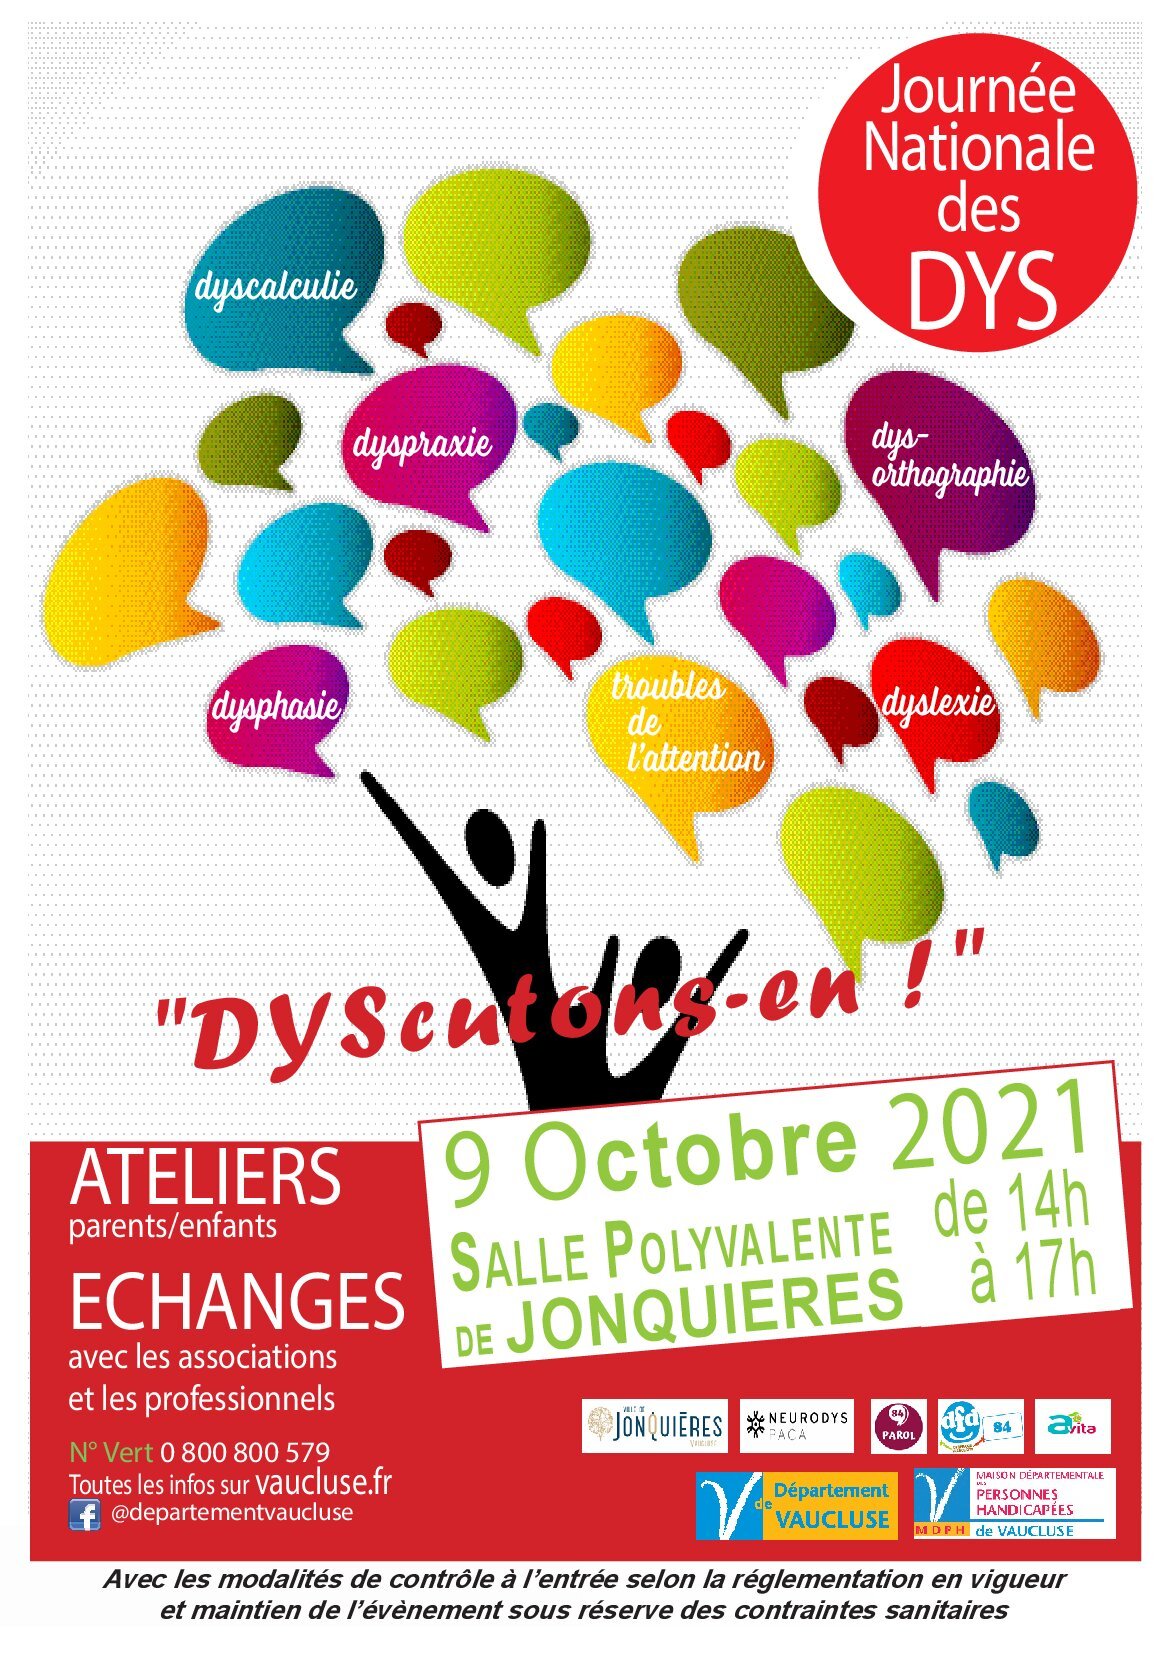 DFD 84 : présente à la JND 2021 à Jonquières